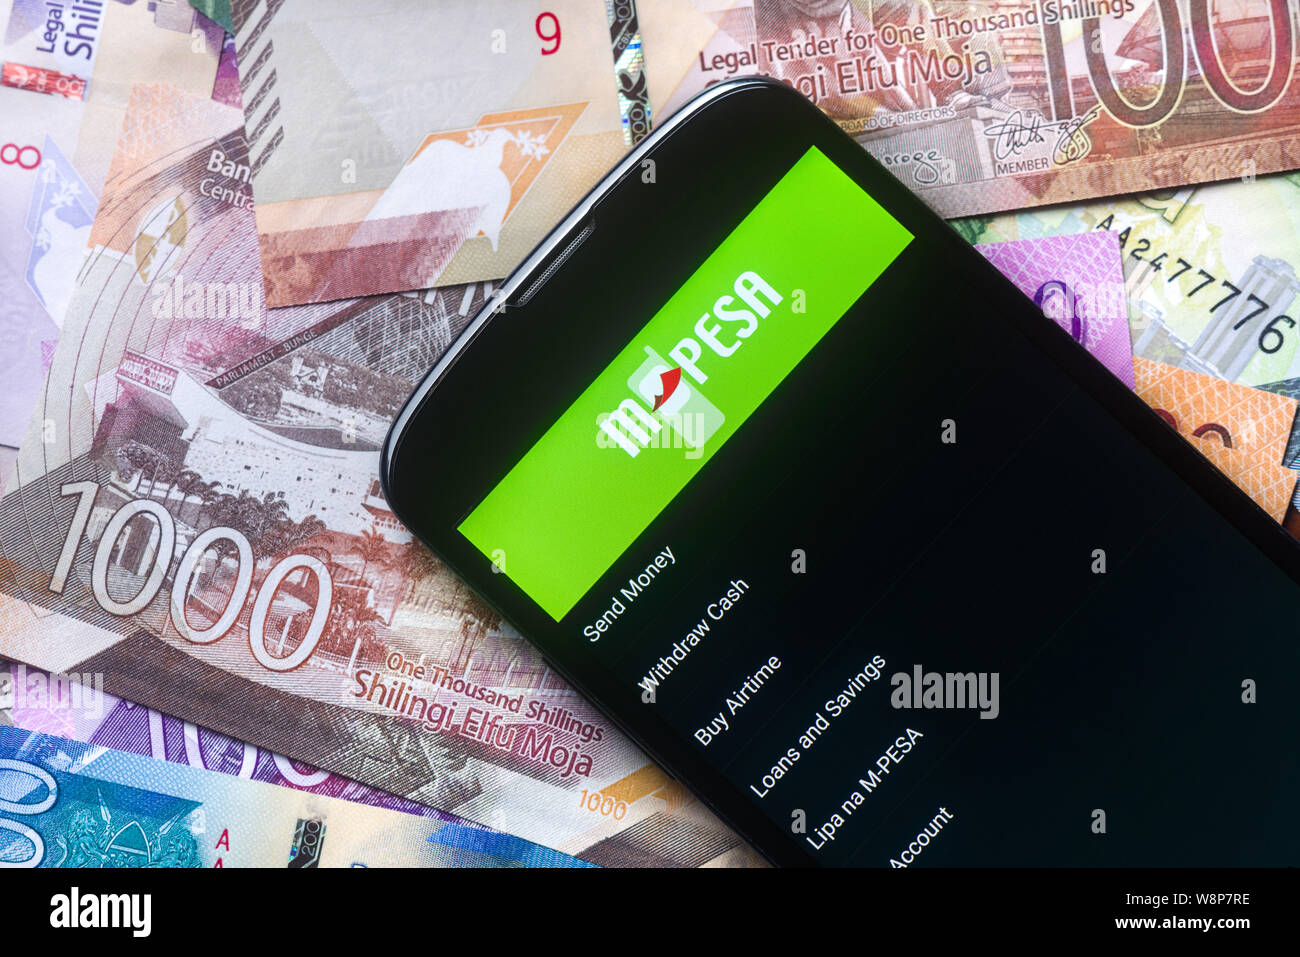 Safaricom M-Pesa fintech Mikrofinanz geld Transaction Service am Telefon mit neuen kenianischen Schilling Banknoten Hintergrund Stockfoto